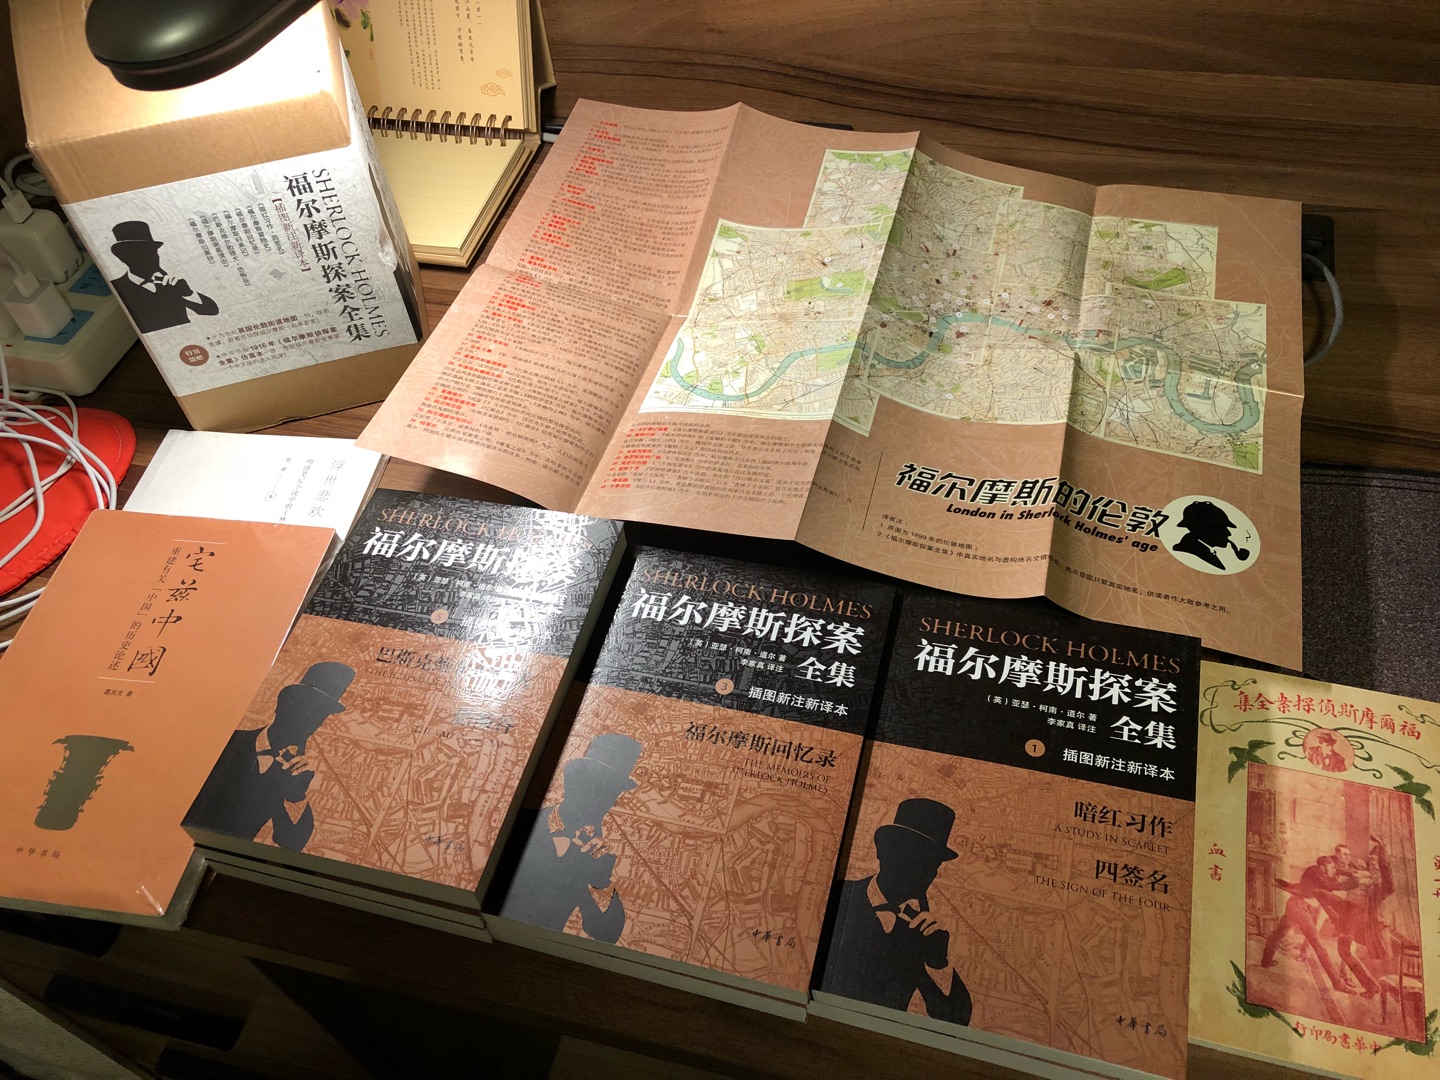 小时候读的福尔摩斯一定是盗版，所以这次趁着中华书局再版福尔摩斯来补票，装帧和体例一如书局的高水准，地图和民国版则是大大的惊喜。